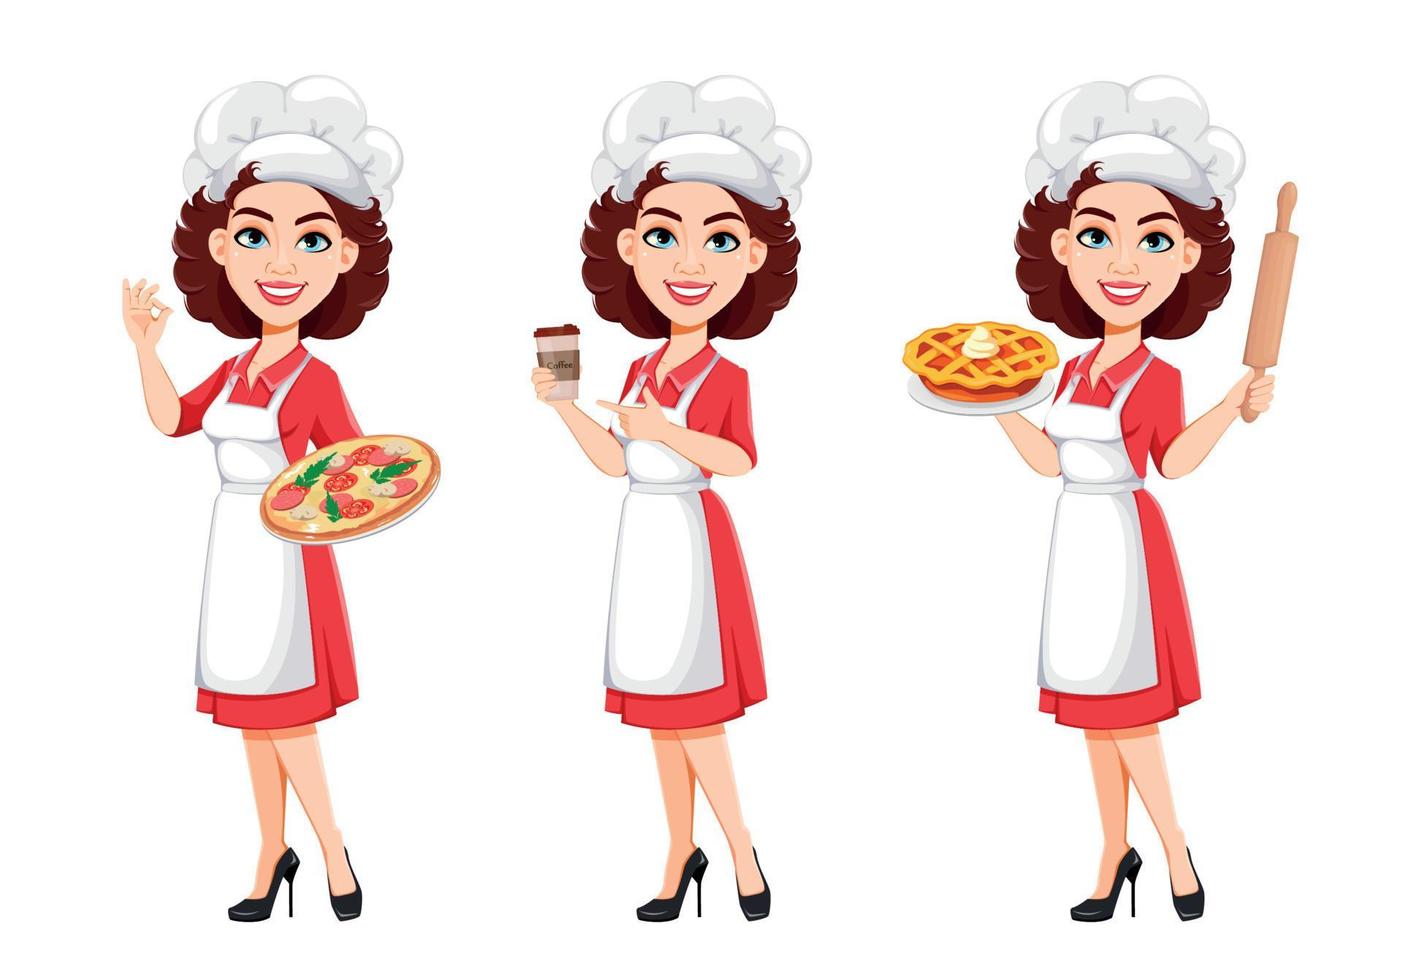 chef-kok vrouw, set van drie poses. kokvrouw vector